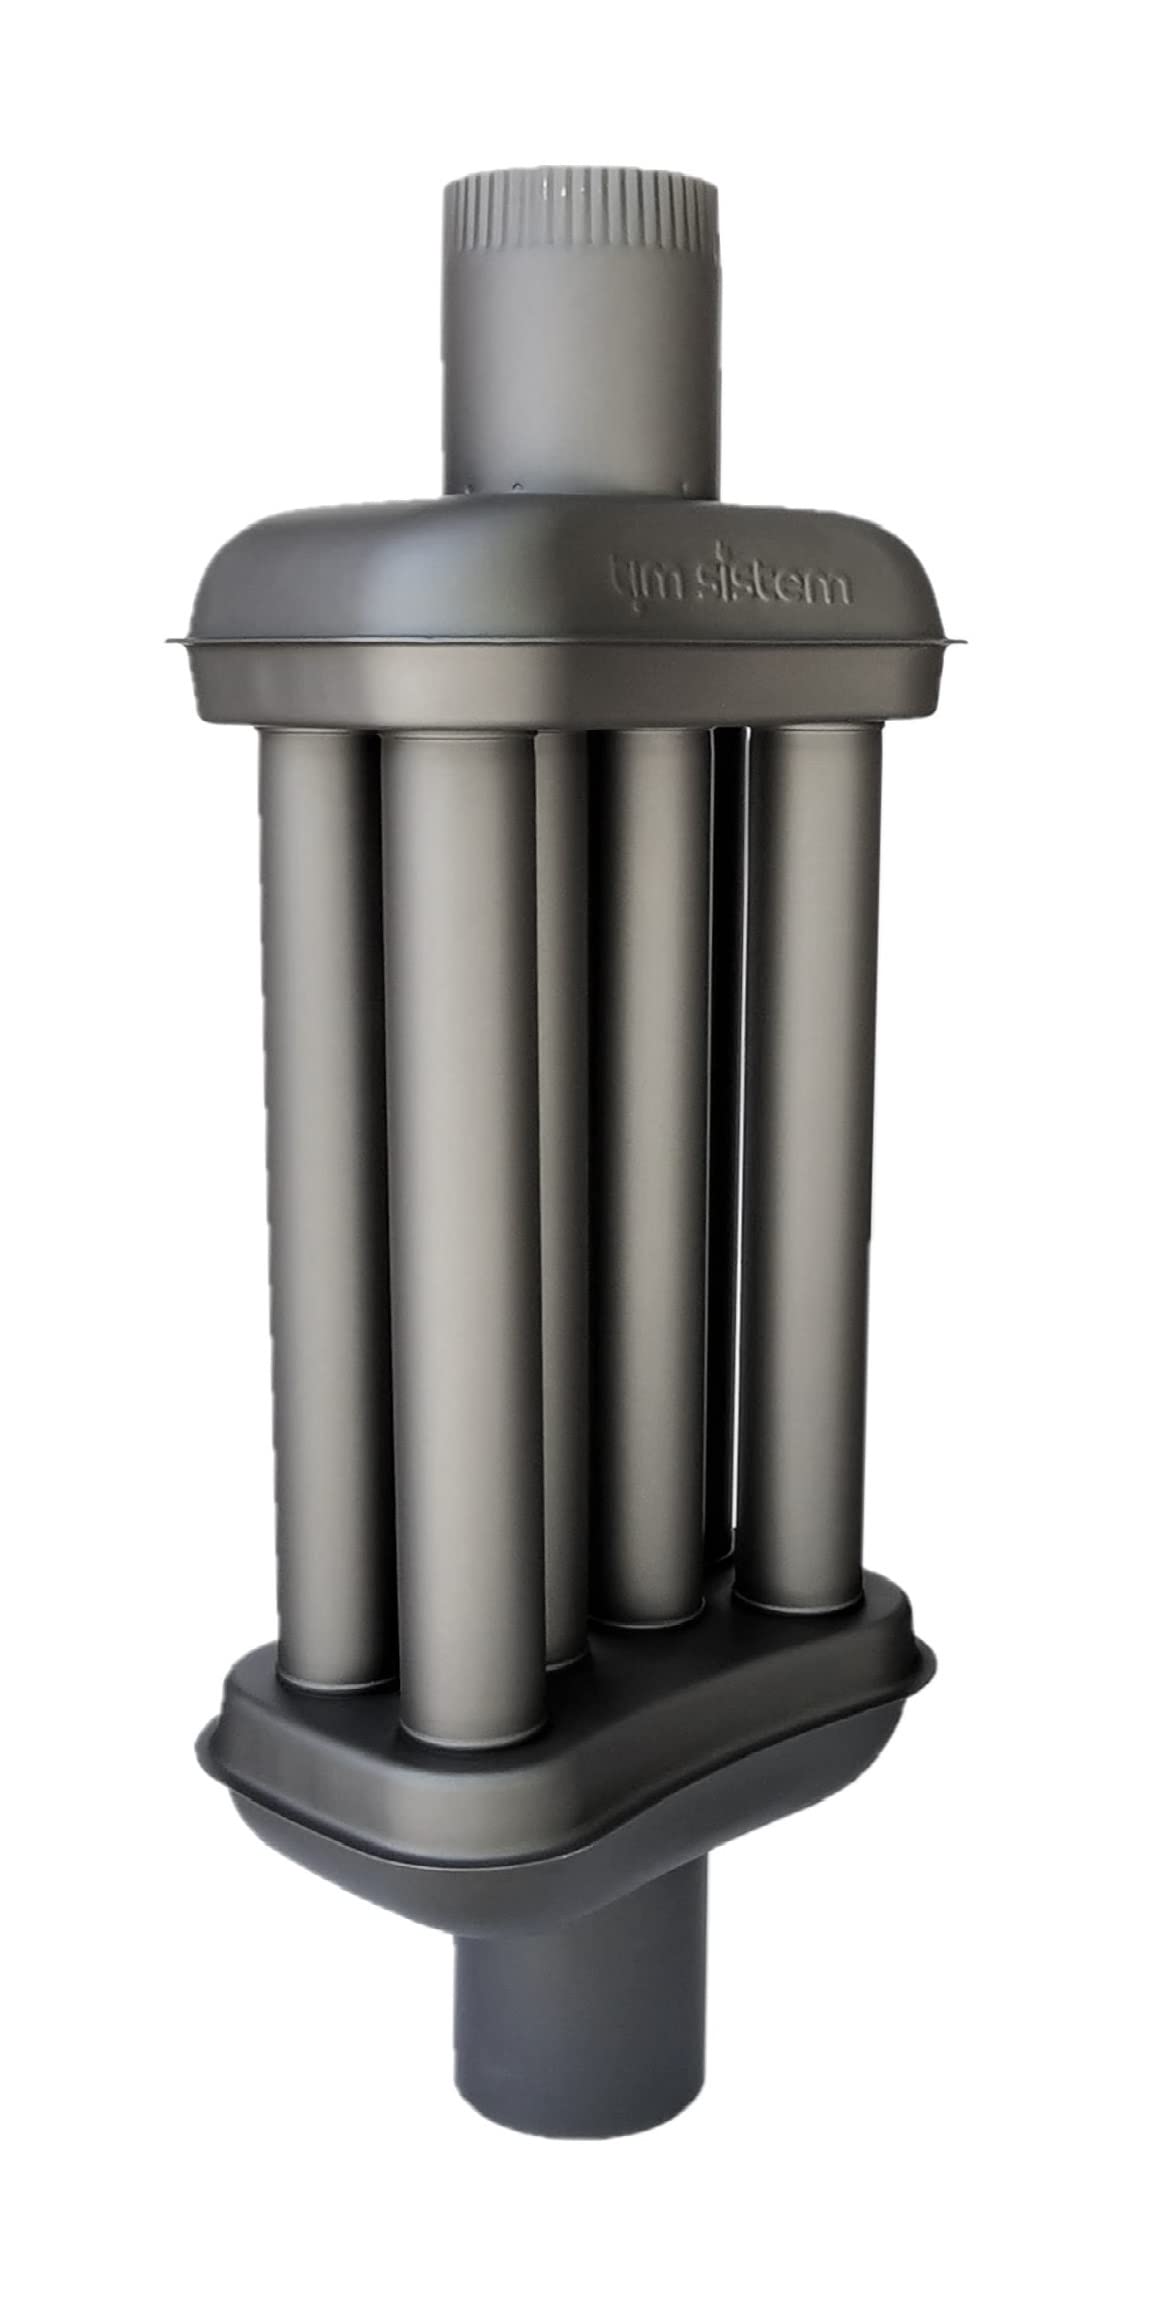 Denvel TimSistem 120mm Abgaswärmetauscher Warmlufttauscher Rauchrohr Kaminrohr Rauchgaskühler Abgasrohrdurchmesser (80 cm), Schwarz